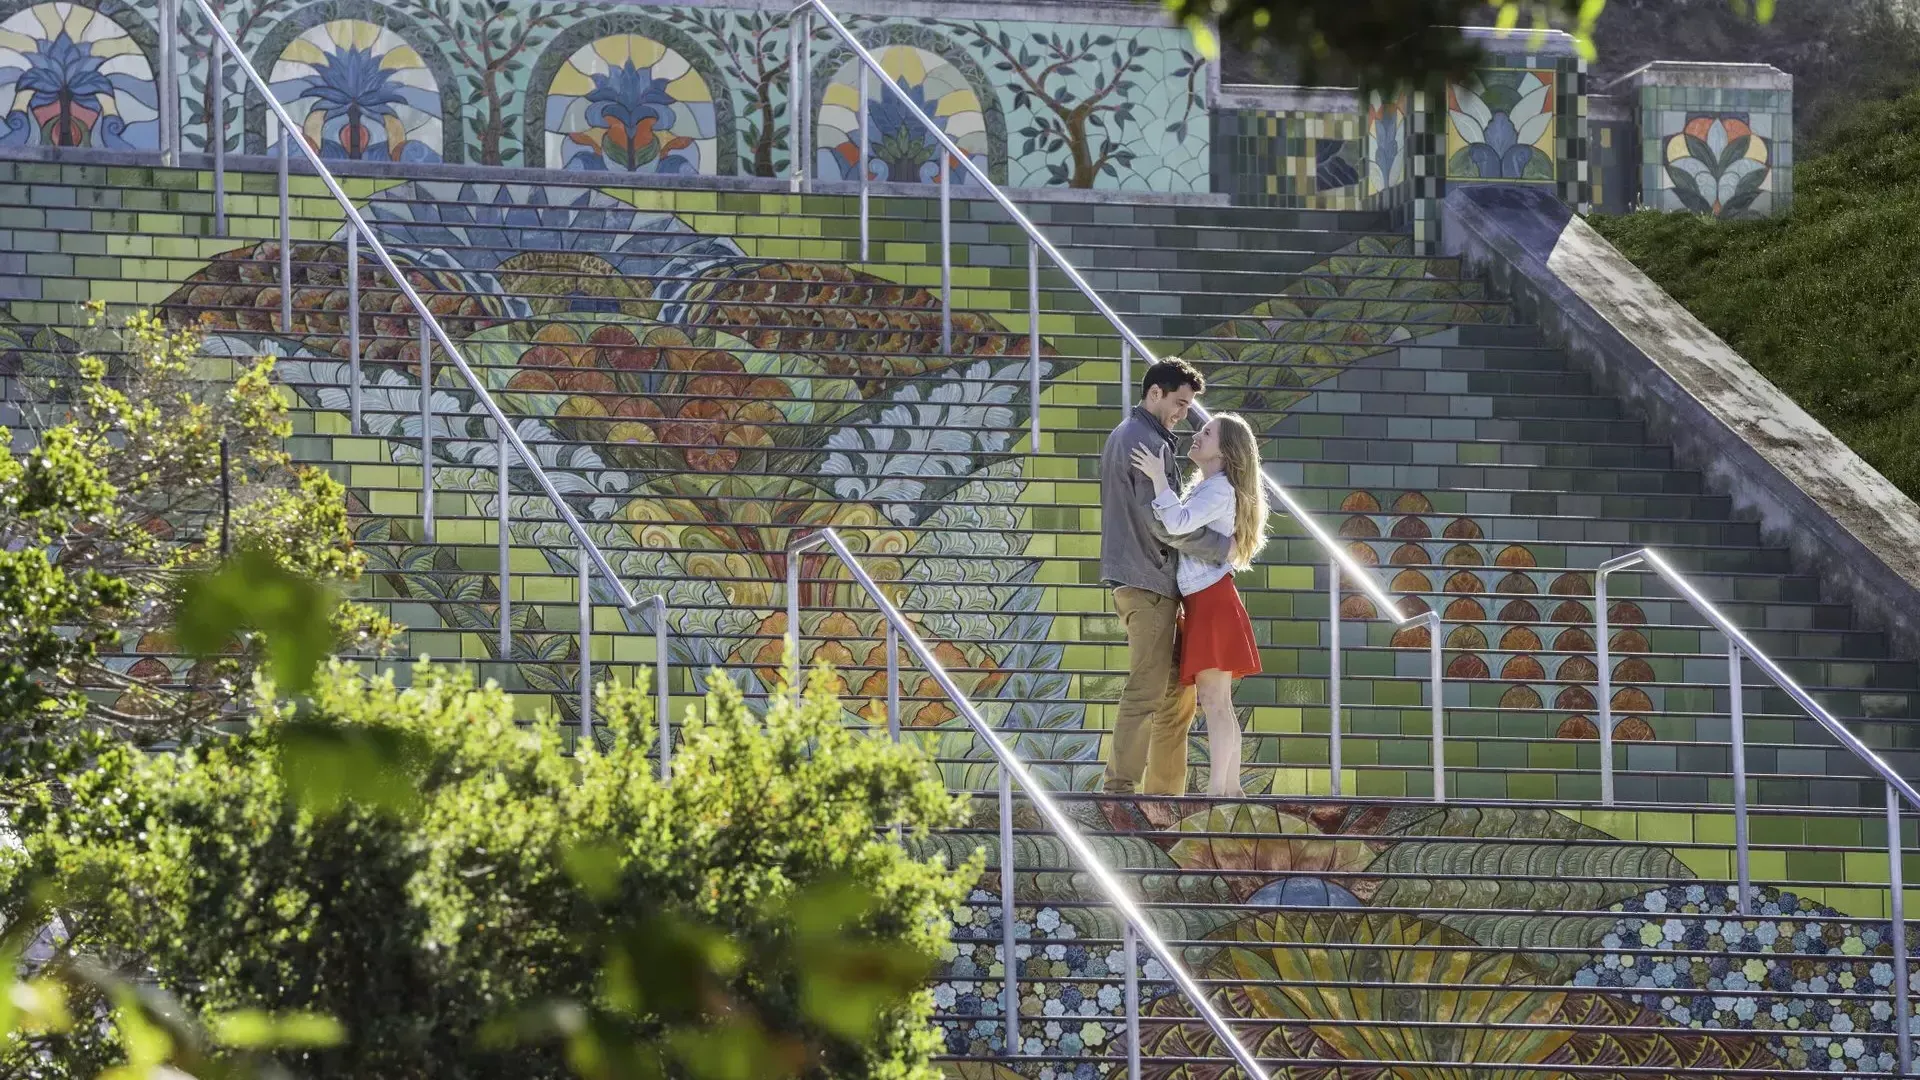 从一对夫妇站在林肯公园五颜六色的瓷砖台阶上的角度拍摄的照片.